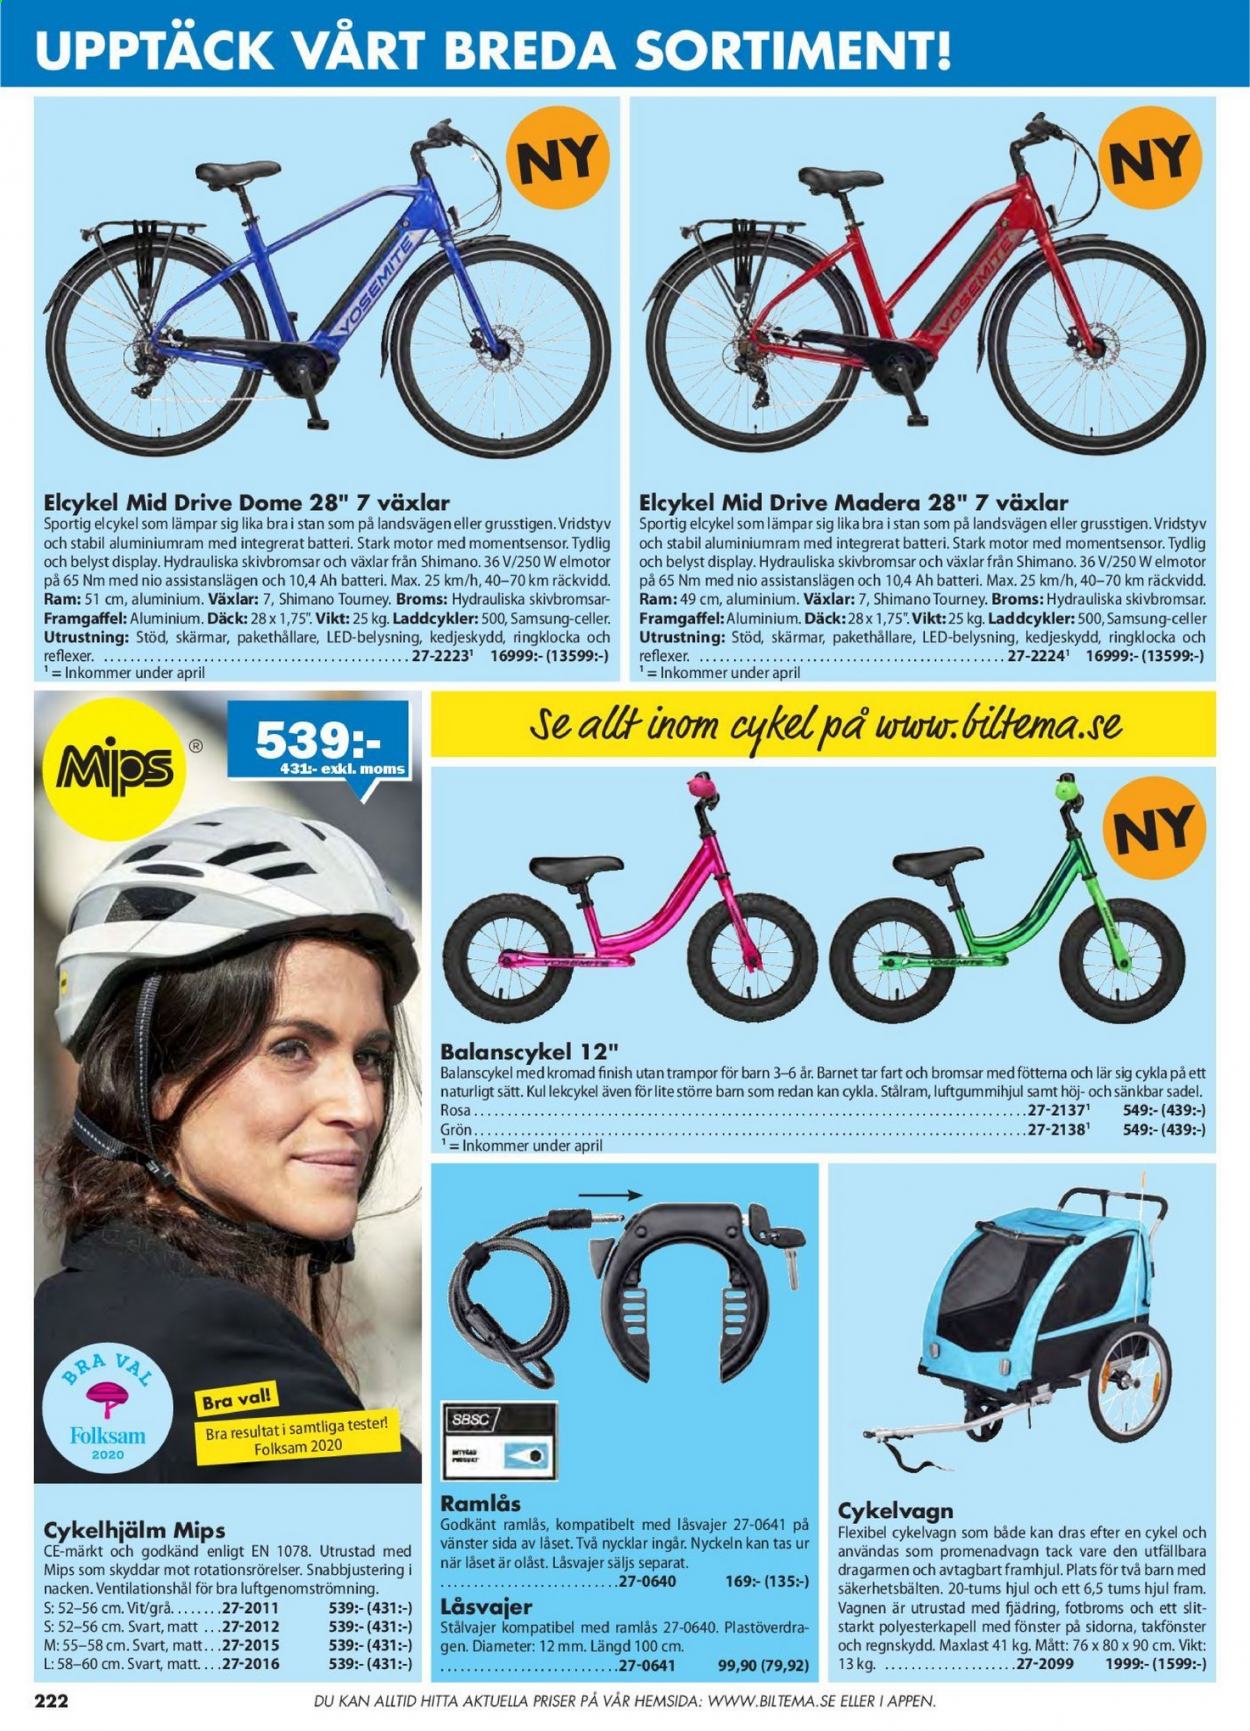 thumbnail - Biltema reklamblad - varor från reklamblad - Samsung, ram, Shimano, cykel. Sida 222.